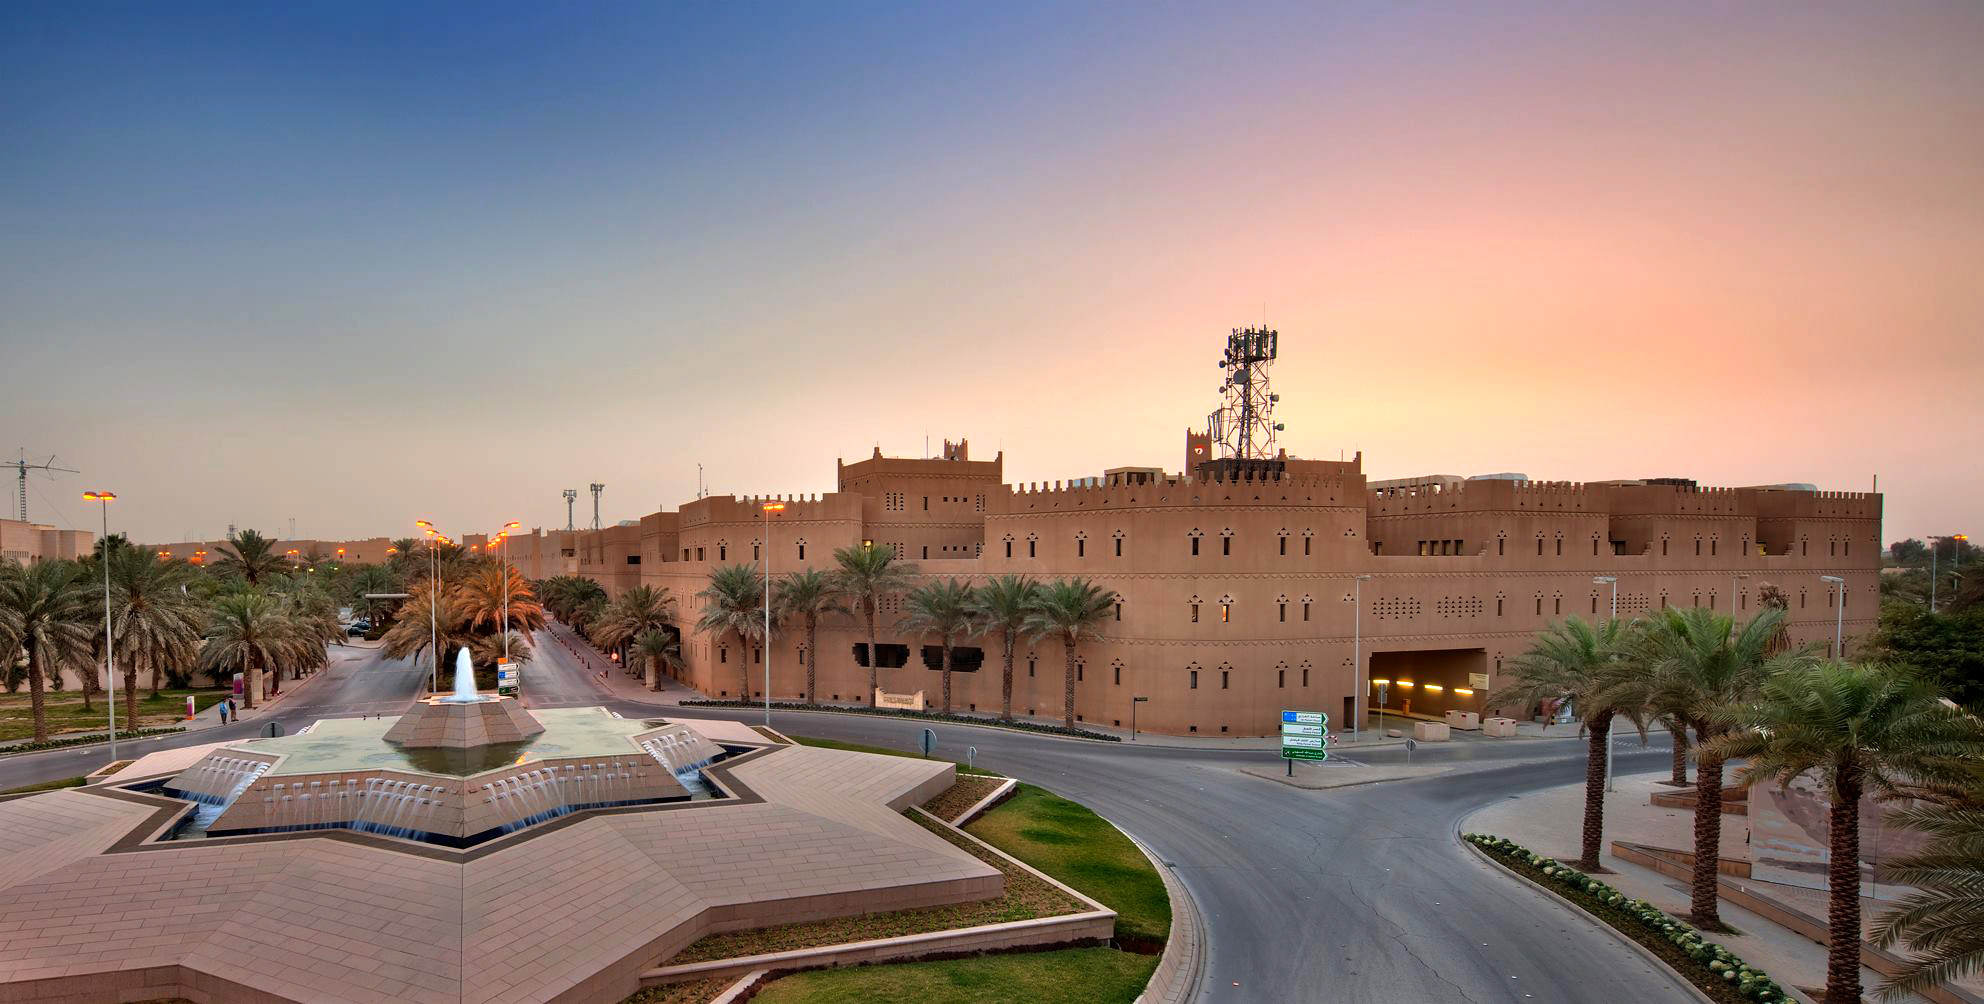 عدد من الوظائف الشاغرة تعلن عنها الهيئة الملكية لمدينة الرياض